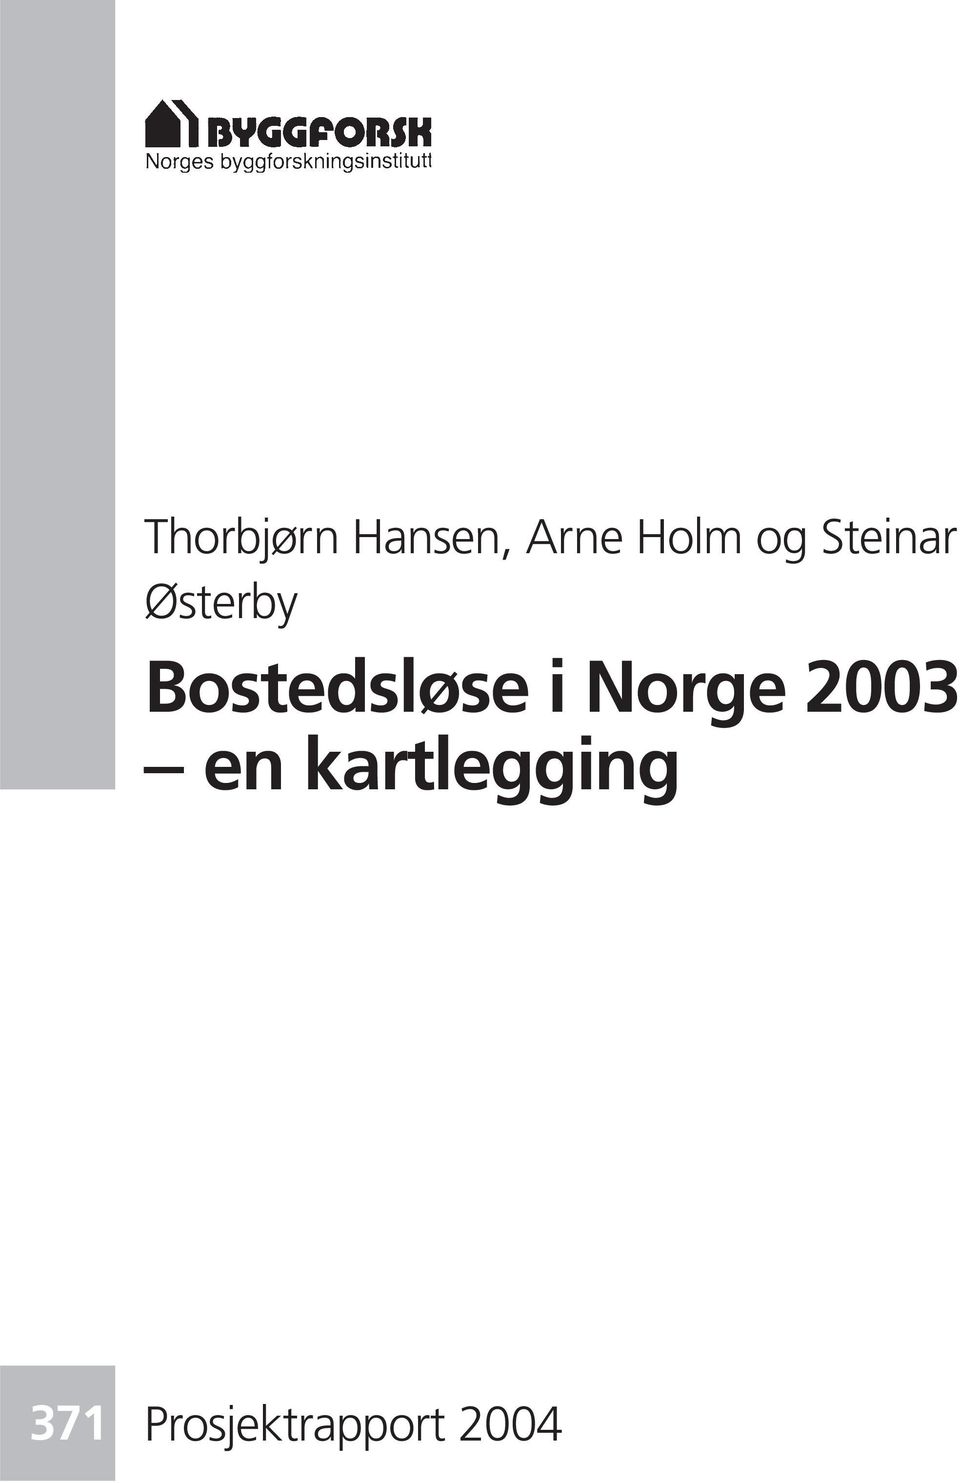 Bostedsløse i Norge 2003 en